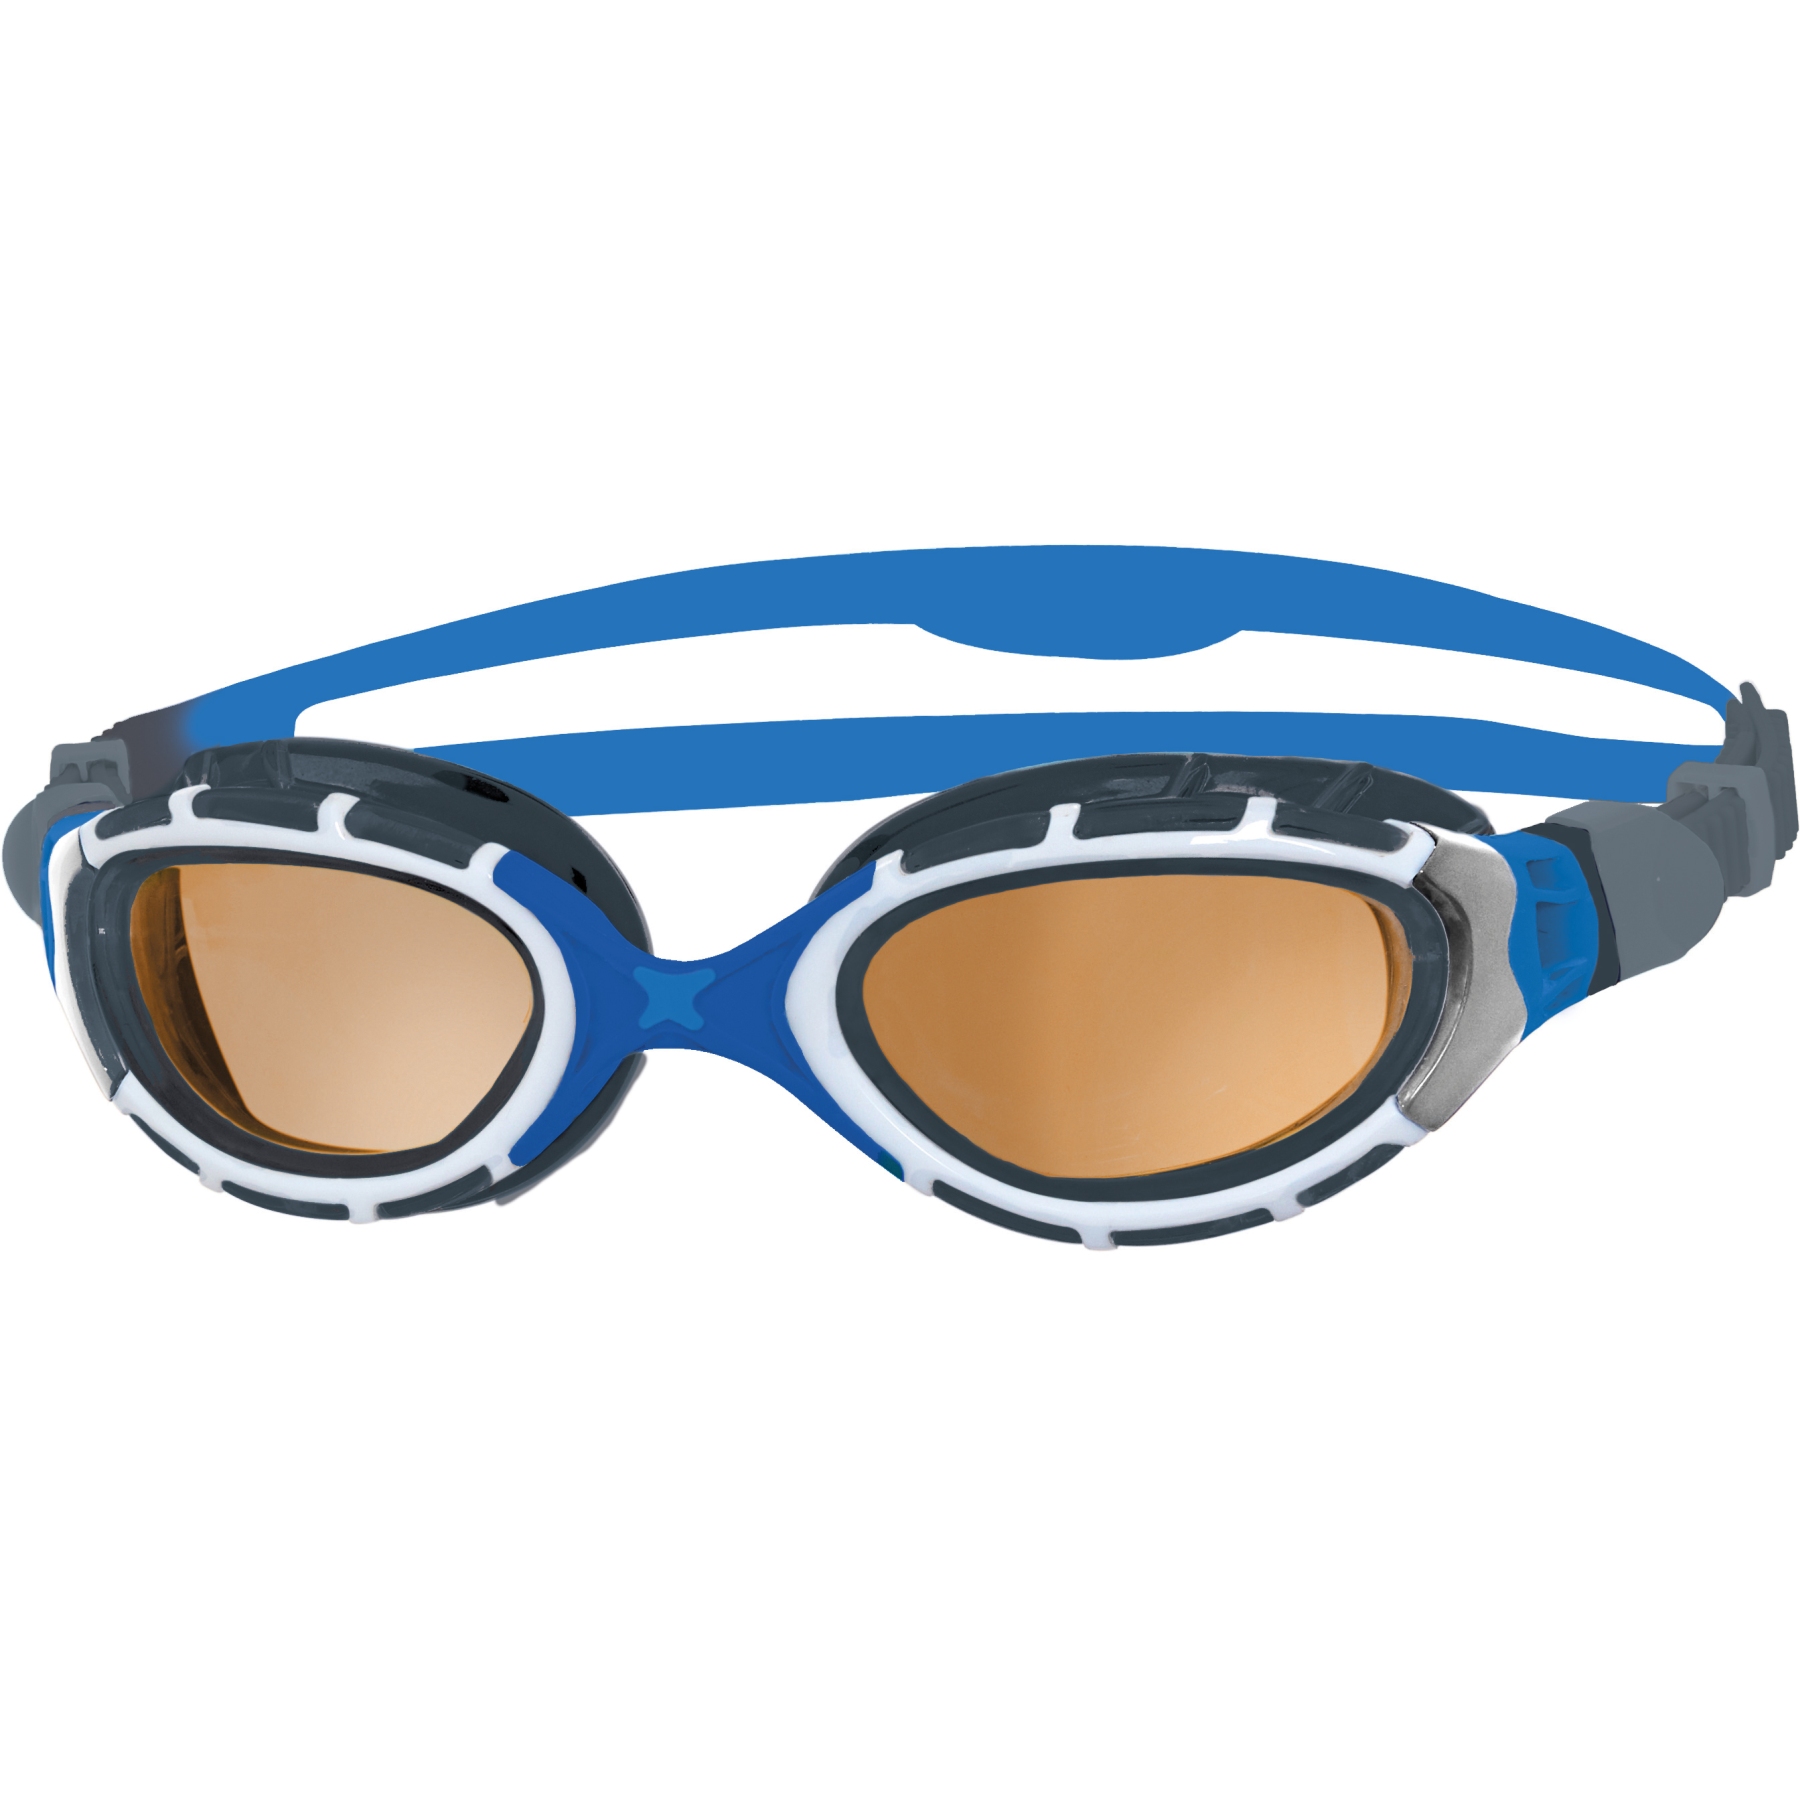 Produktbild von Zoggs Predator Flex Schwimmbrille - Polarized Ultra Copper Gläser - Small Fit - Blau/Grau